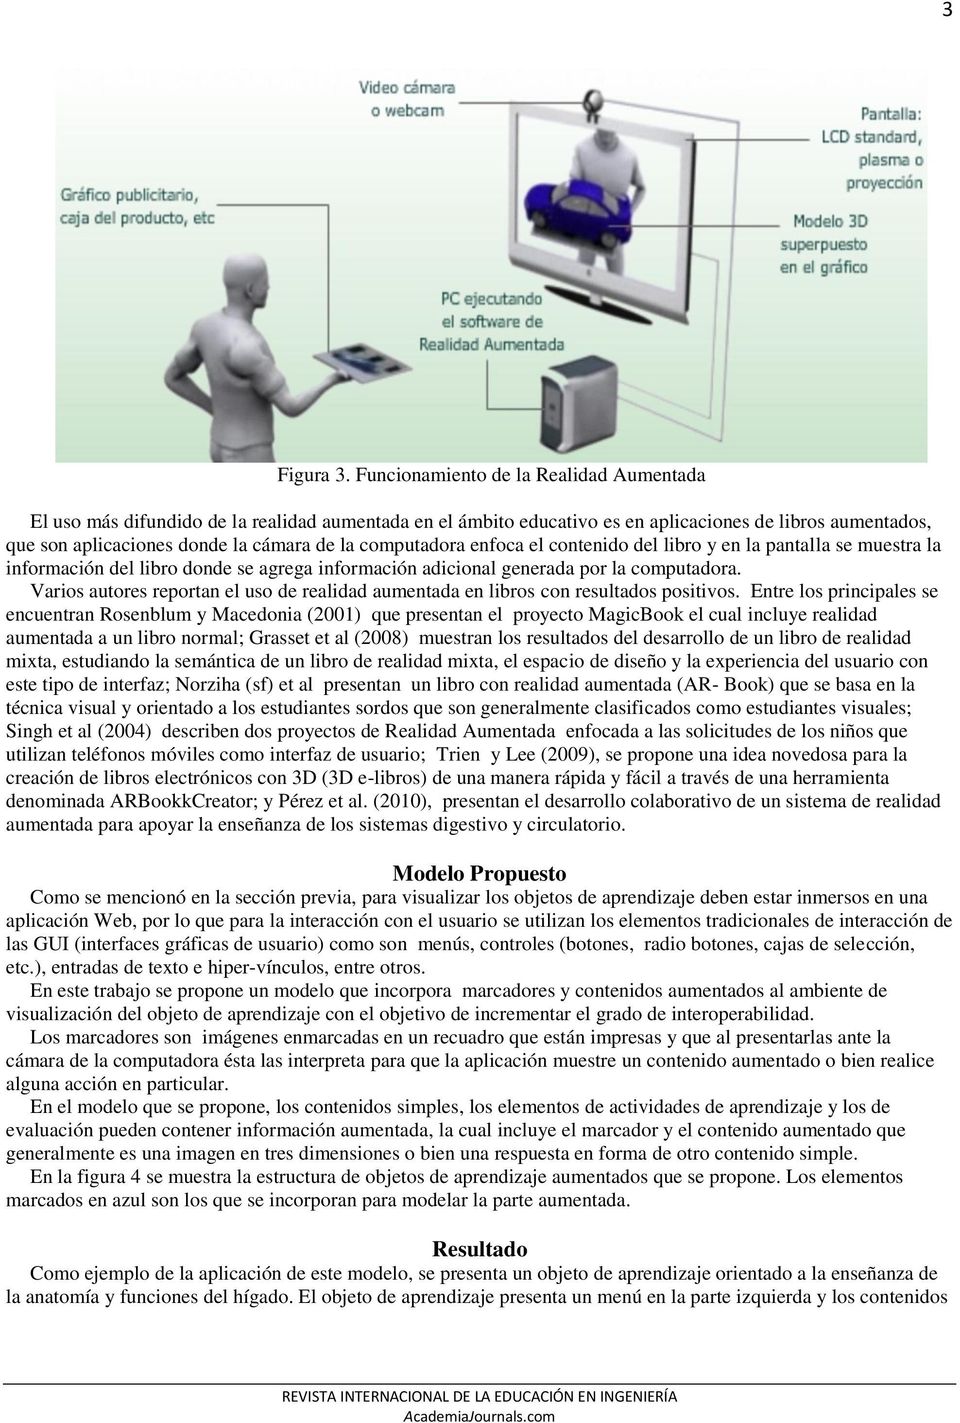 computadora enfoca el contenido del libro y en la pantalla se muestra la información del libro donde se agrega información adicional generada por la computadora.